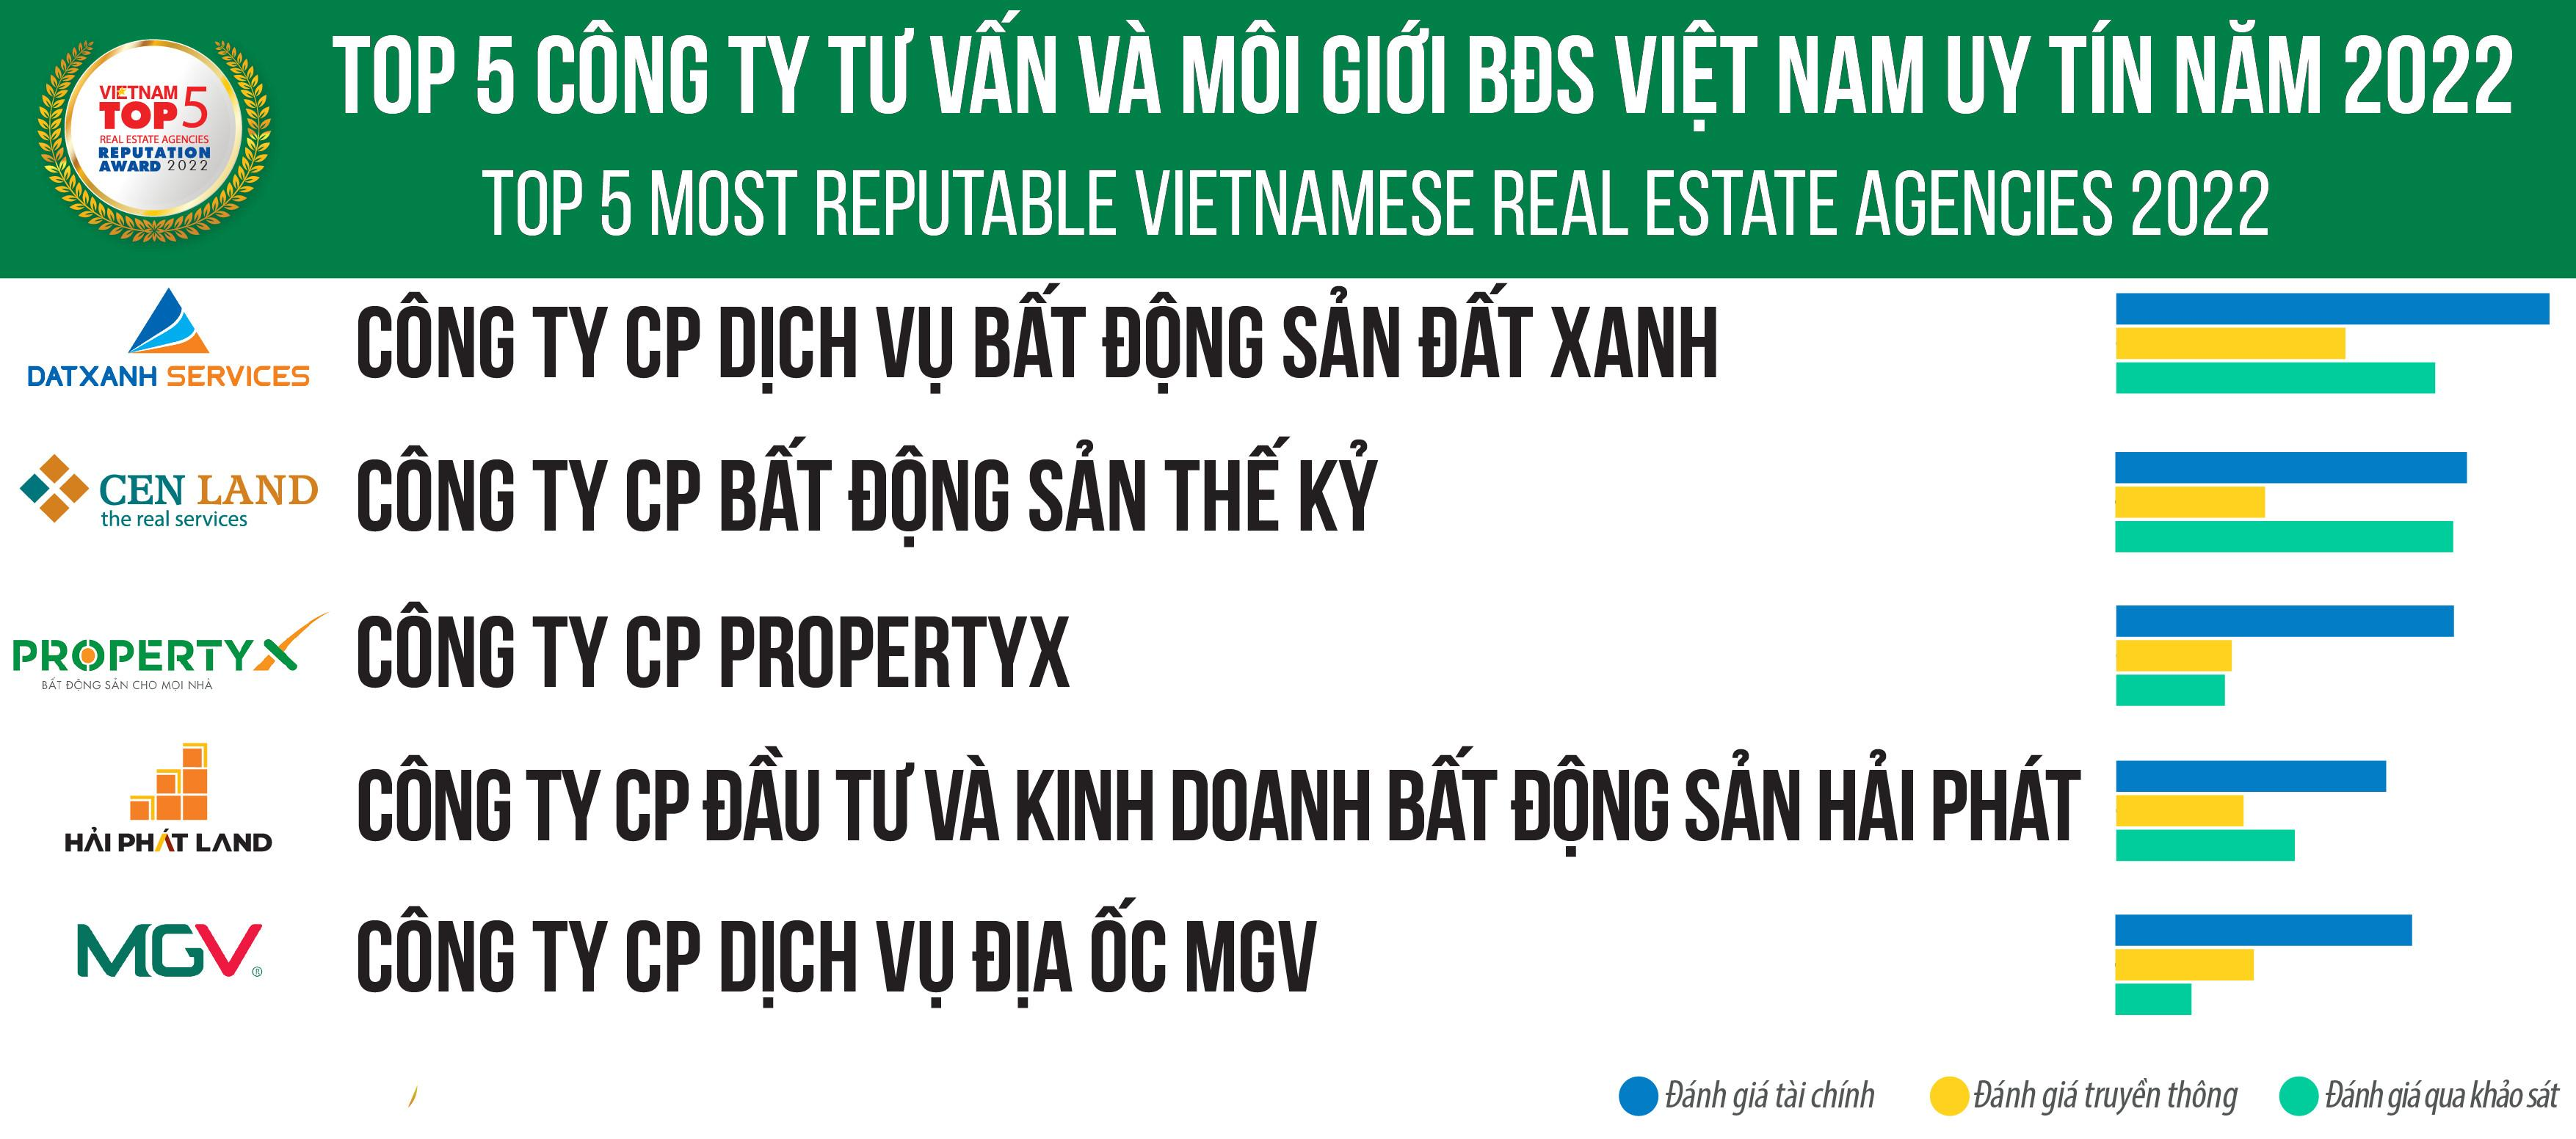 Dat Xanh Services dẫn đầu Top 5 công ty tư vấn và môi giới BĐS Việt Nam